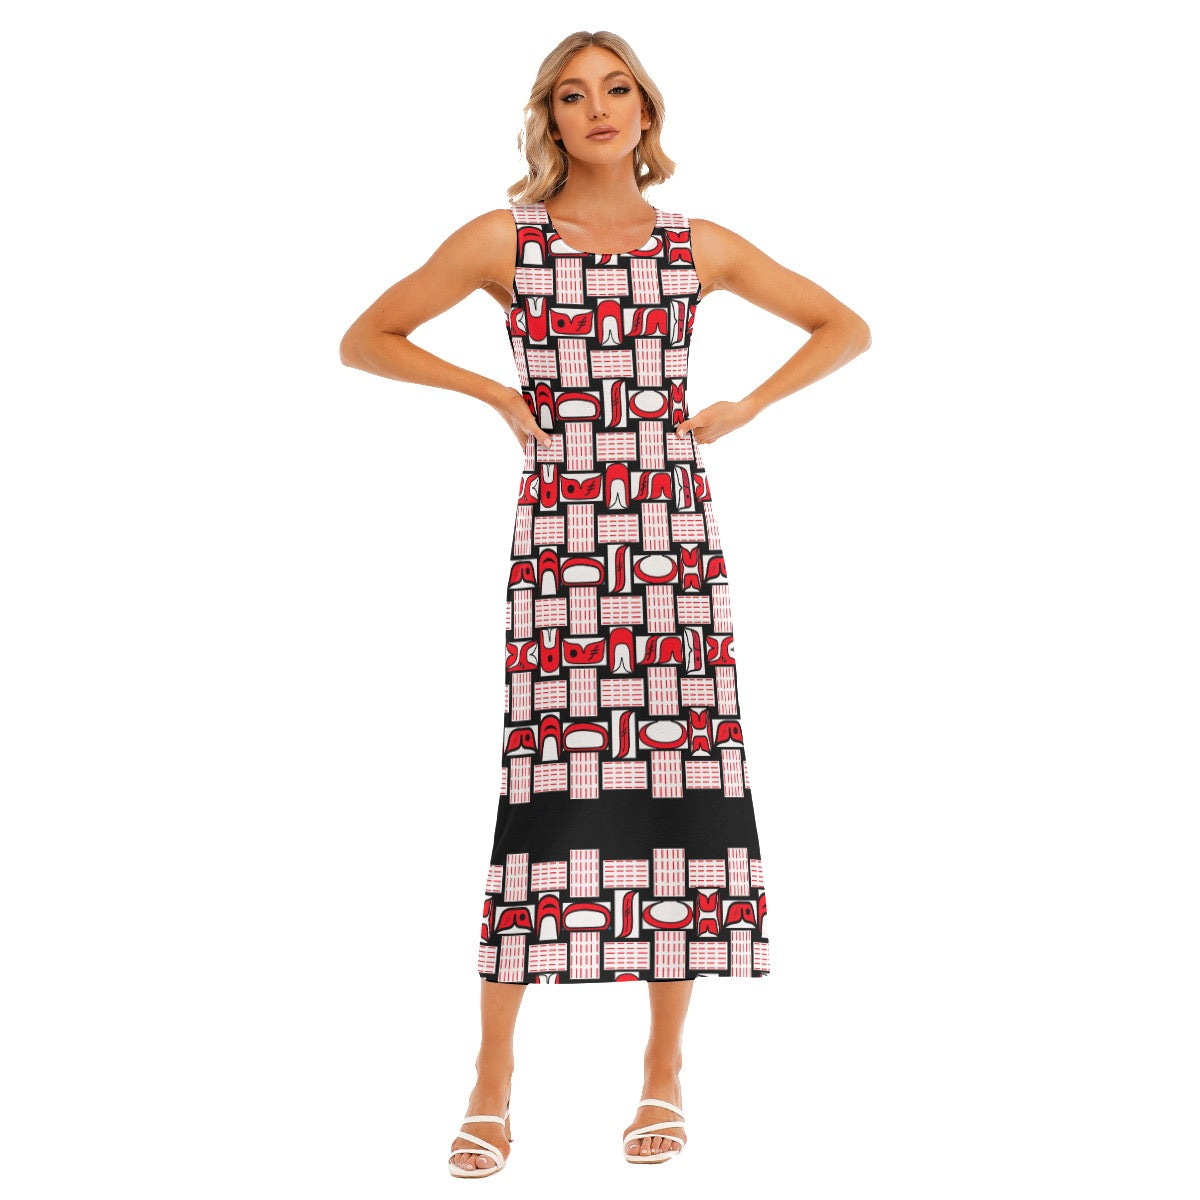 All-Over Print Women's Tank Top Long Dress